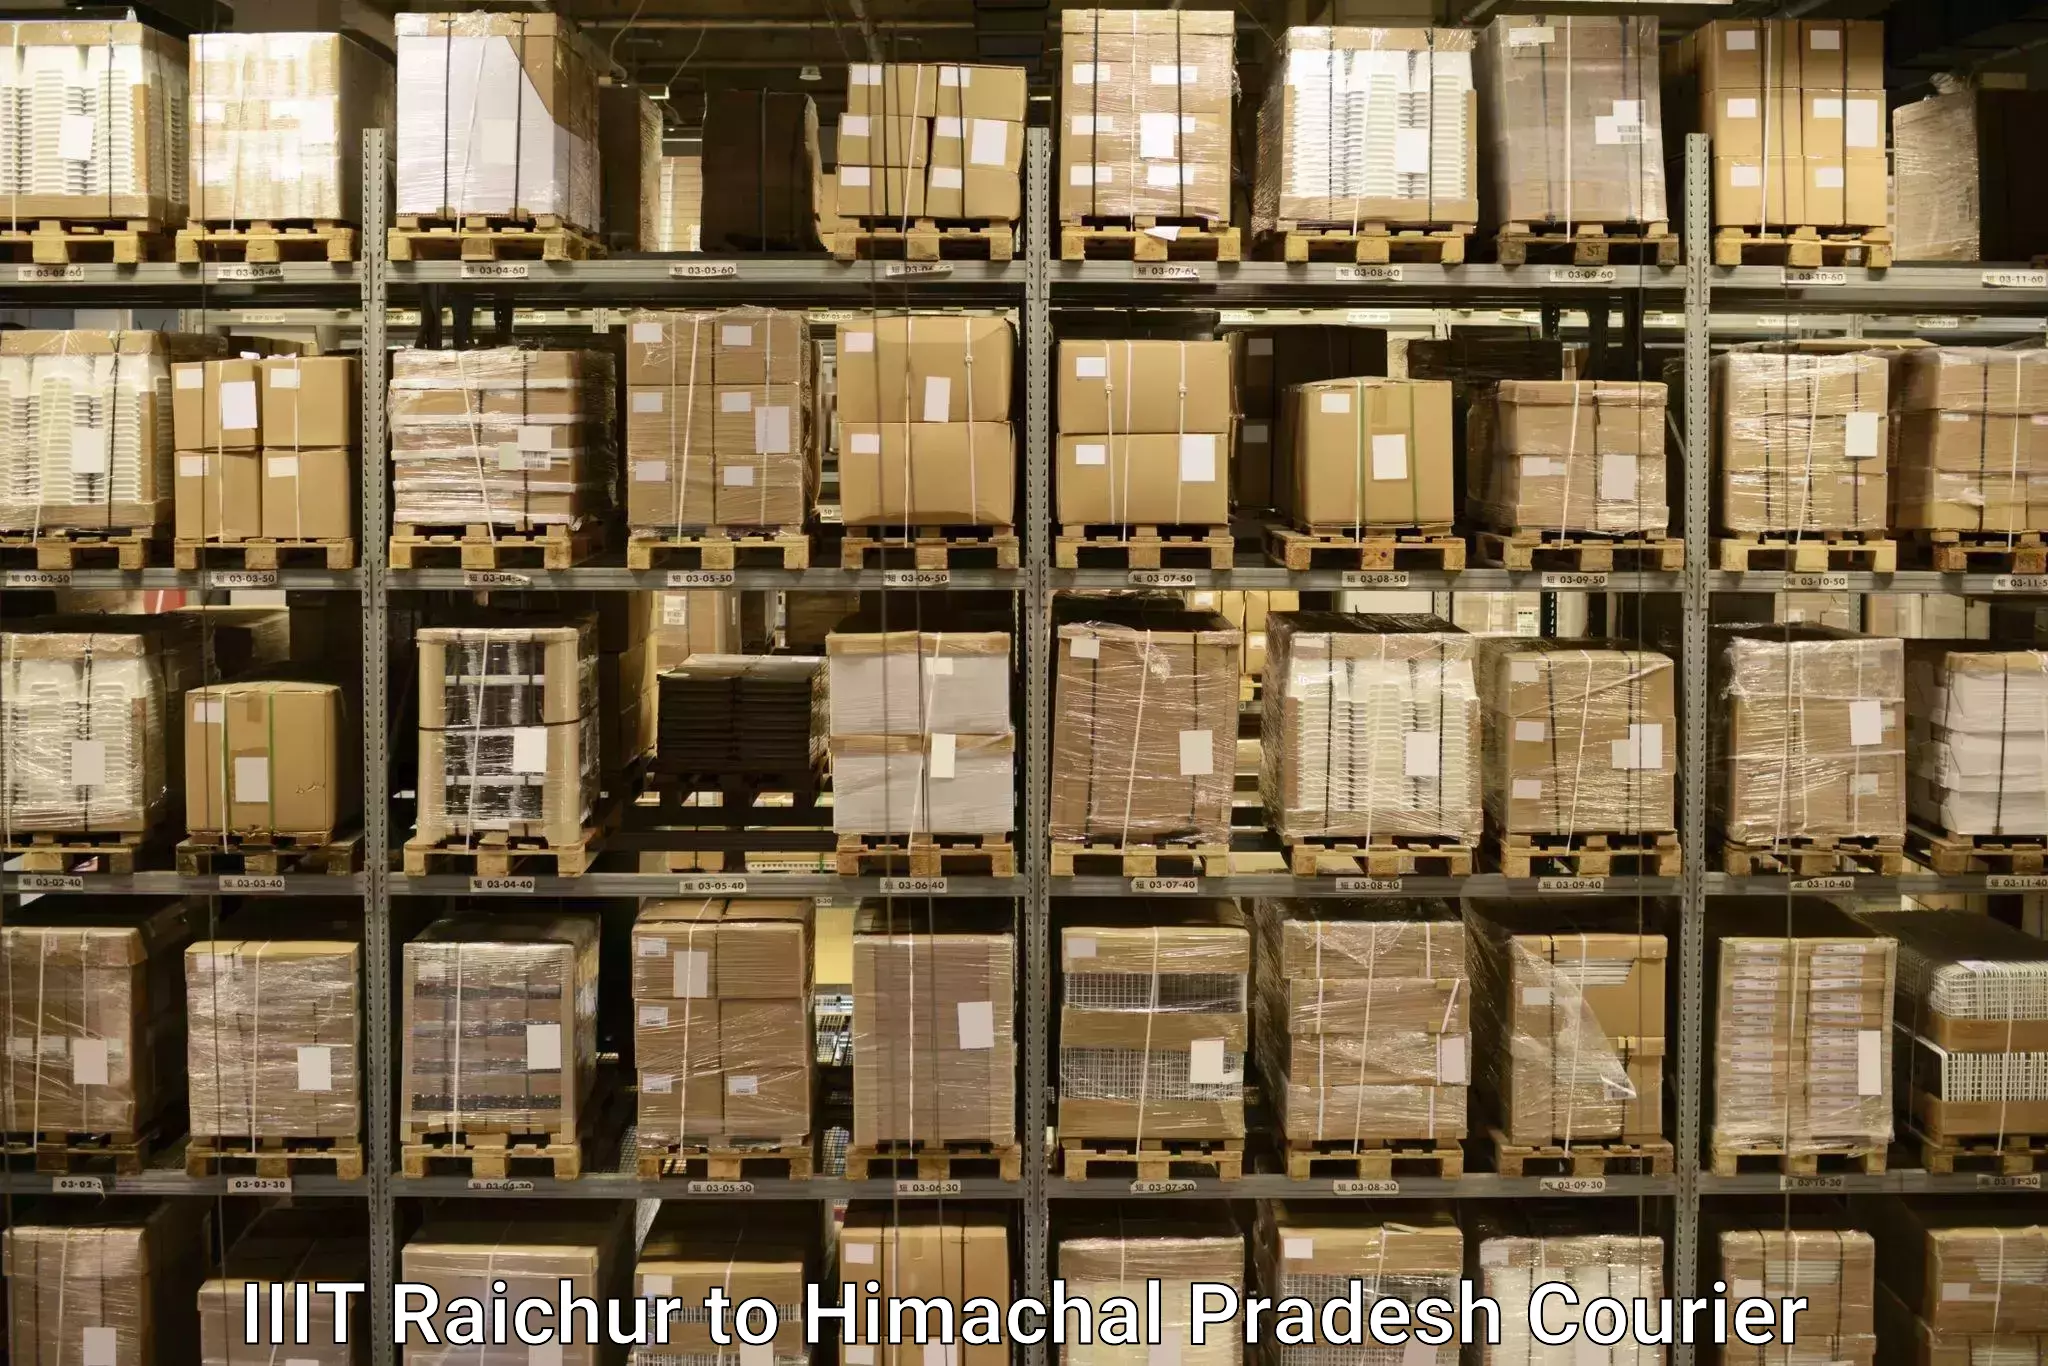 Luggage shipping service IIIT Raichur to Dheera